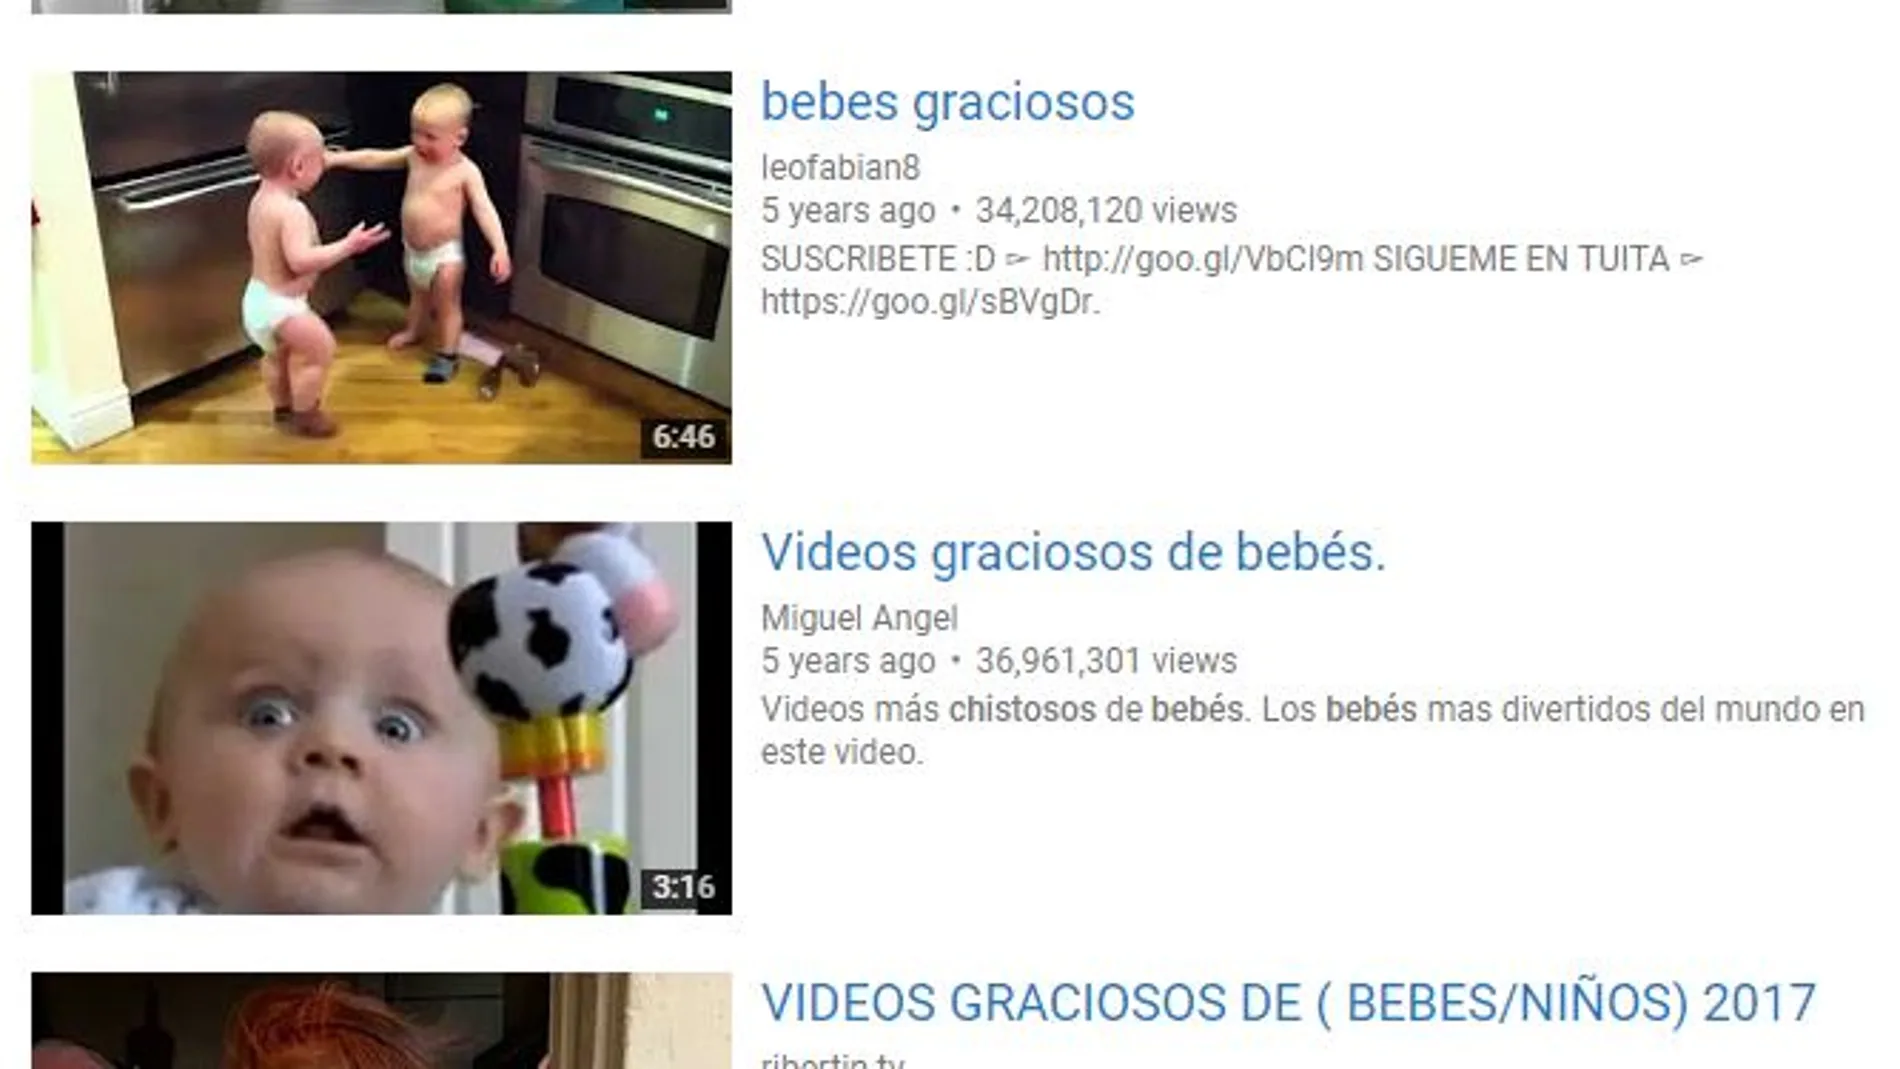 Los vídeos de bebés son muy populares en Youtube